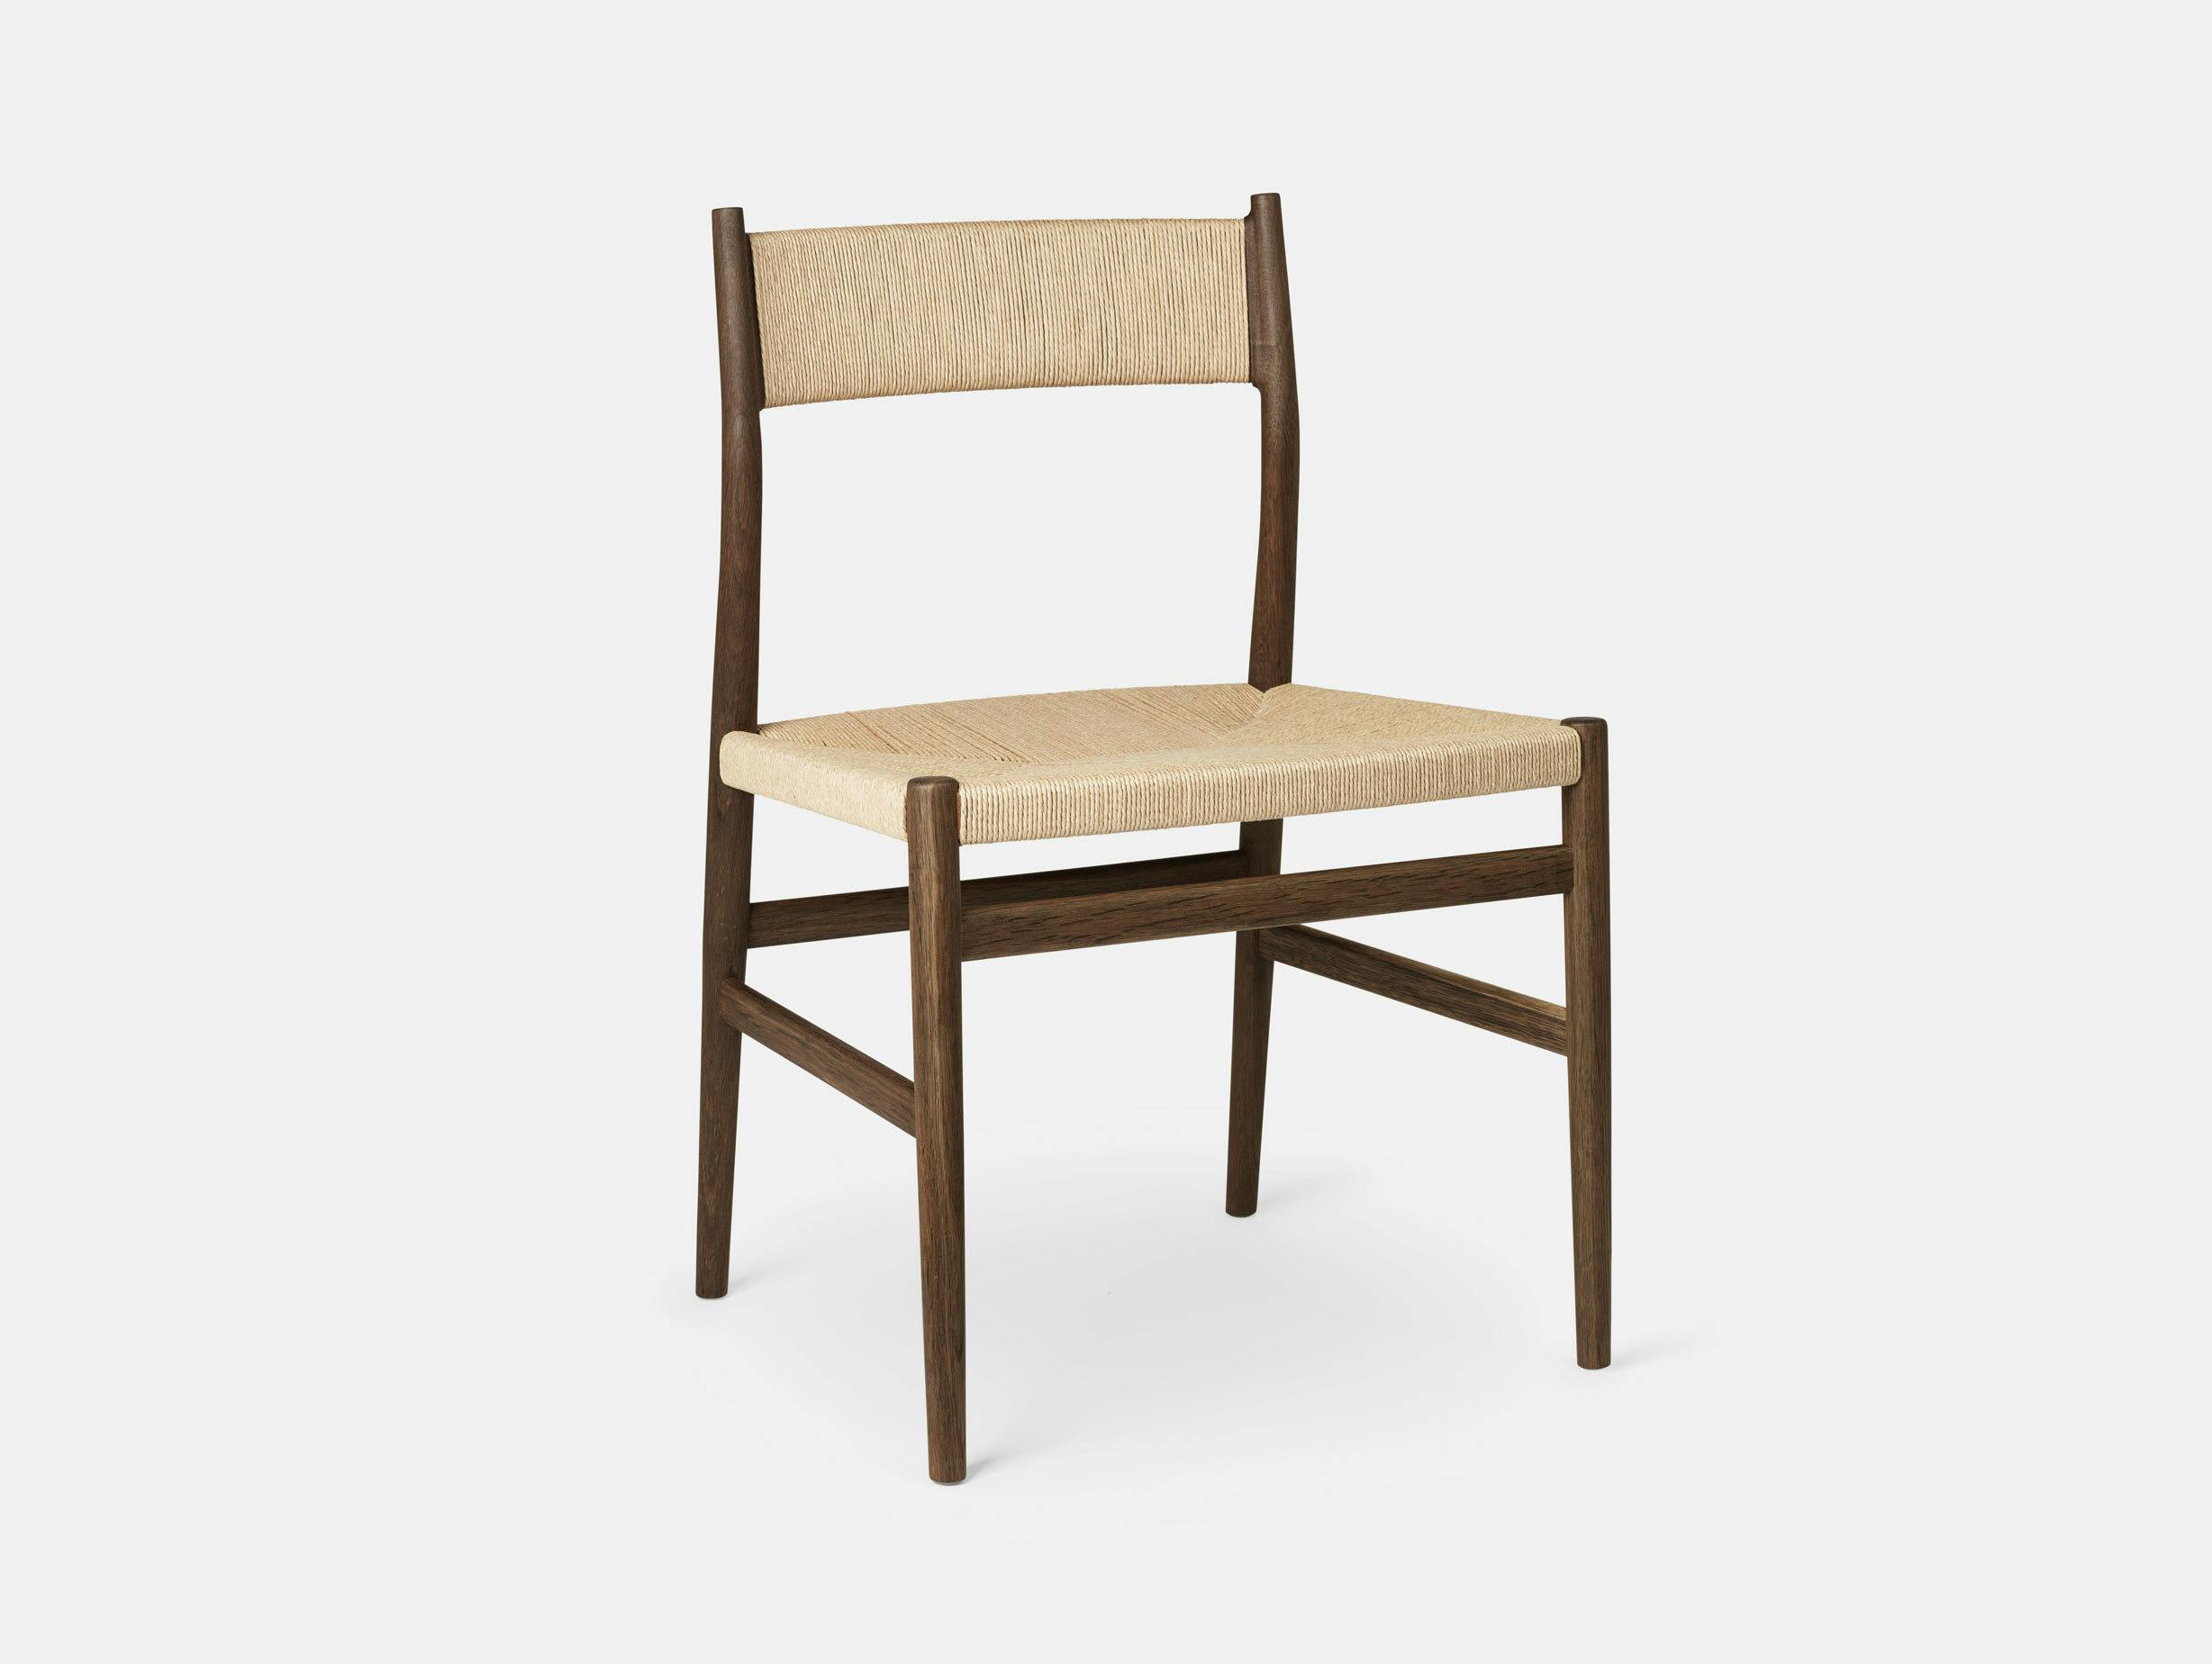 Brdr Kruger ARV Side Chair fumed oak woven seat back Studio David Thulstrup